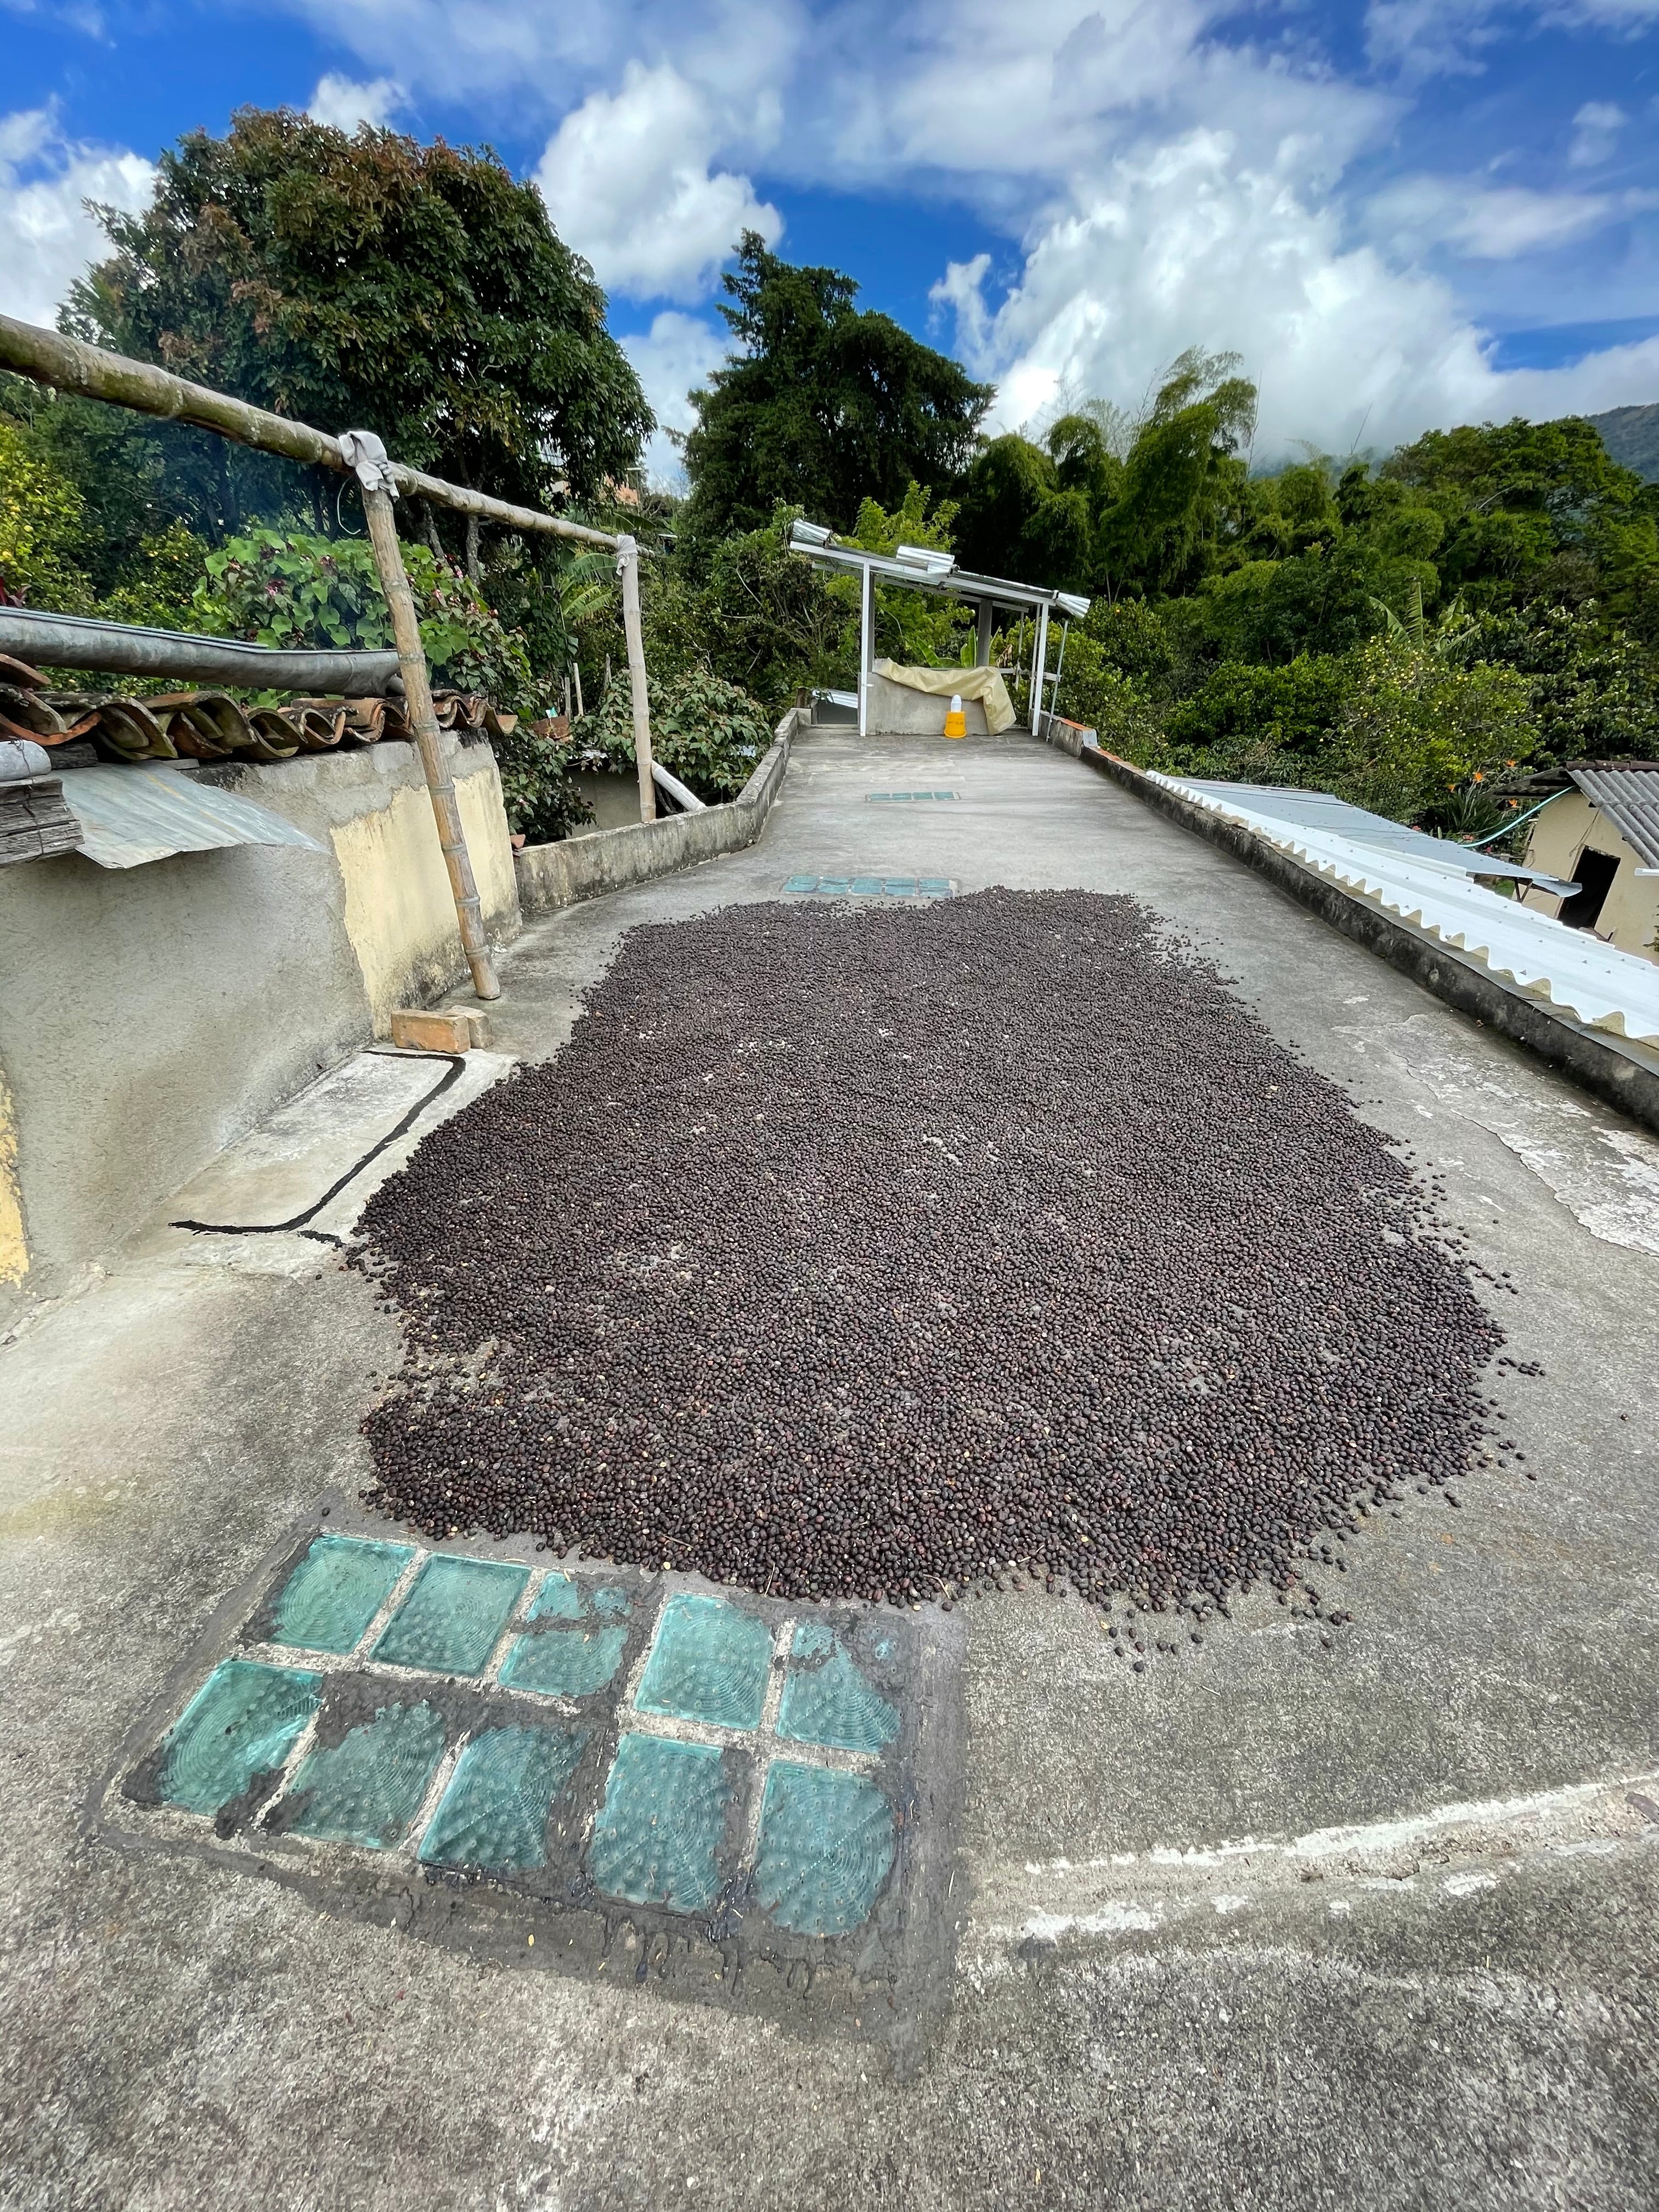 Damit die als "naturals" verarbeiteten Kaffees vor allem in den ersten Tagen schnell trocknen, können sie auf den sonnigen Dächern der Kaffeefarmen ausgebreitet werden. Juan Pablo "naturals" Kolumbien.